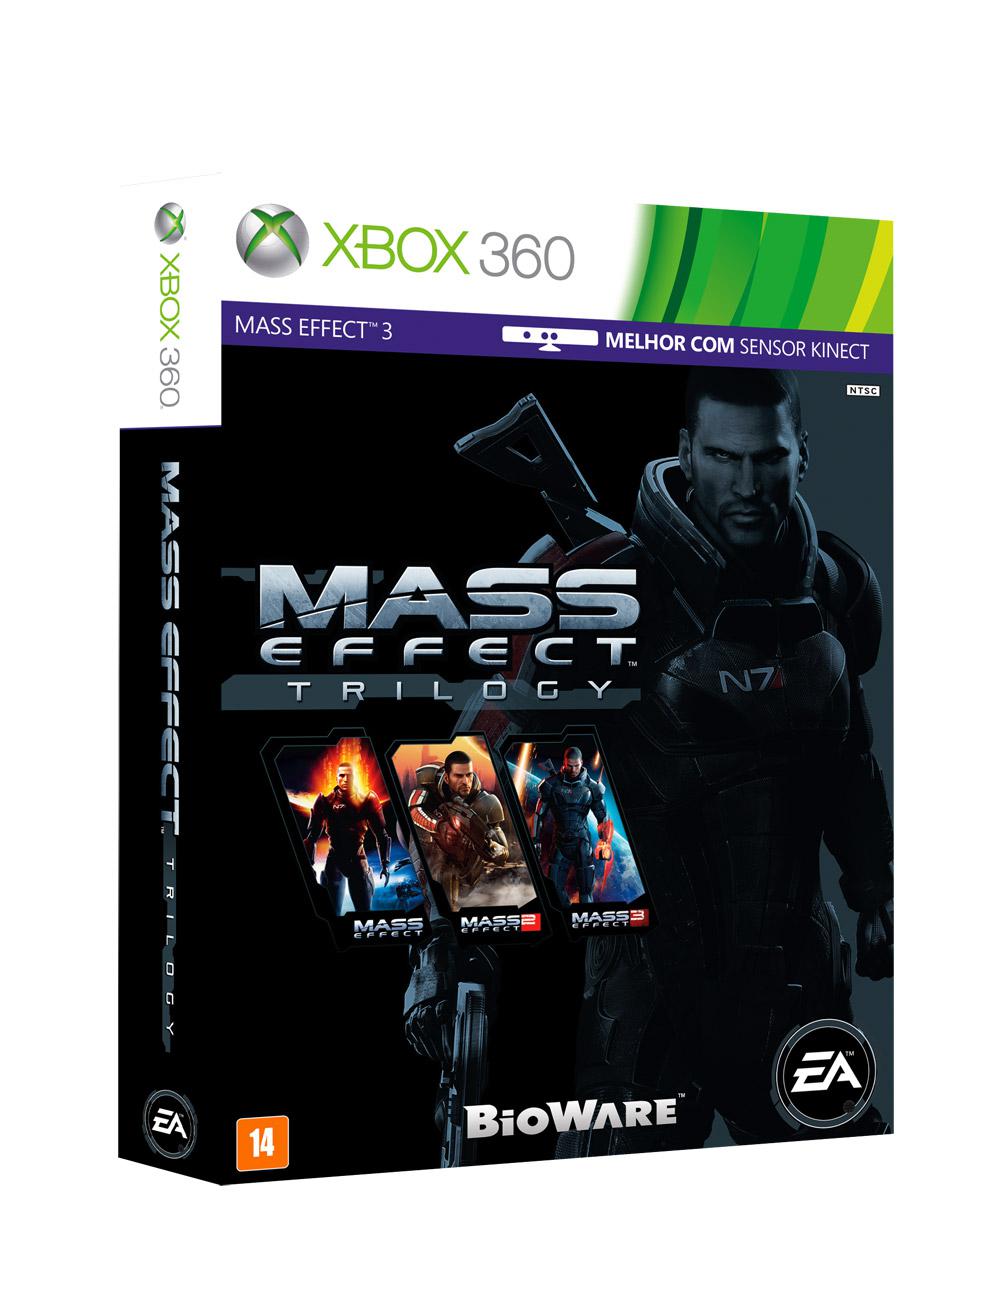 Game Mass Effect Trilogy BR - Xbox 360 é bom? Vale a pena?